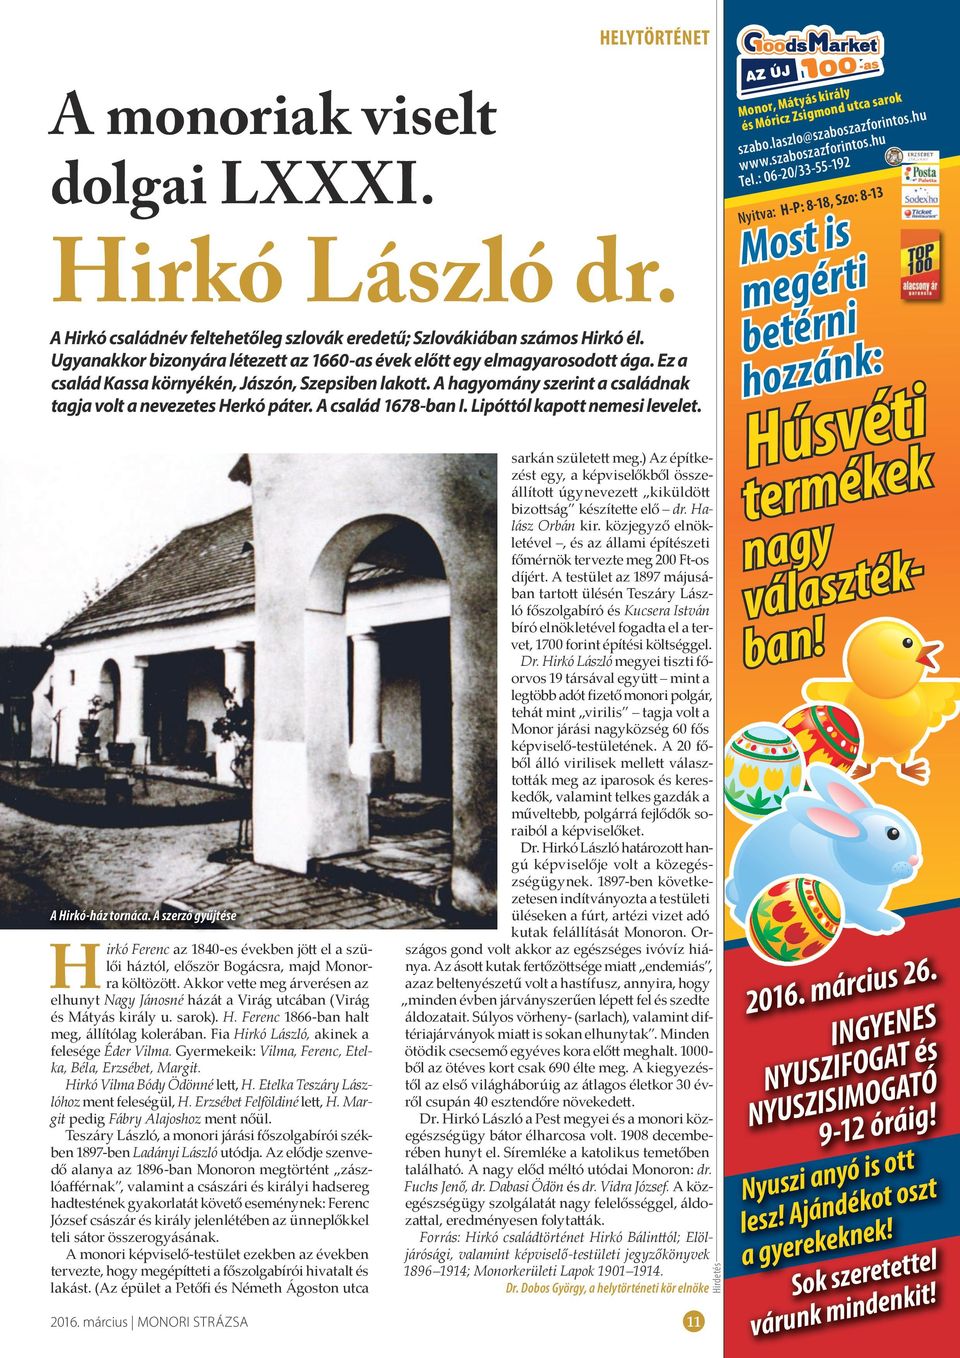 A család 1678-ban I. Lipóttól kapott nemesi levelet. A Hirkó-ház tornáca. A szerző gyűjtése Hirkó Ferenc az 1840-es években jött el a szülői háztól, először Bogácsra, majd Monorra költözött.